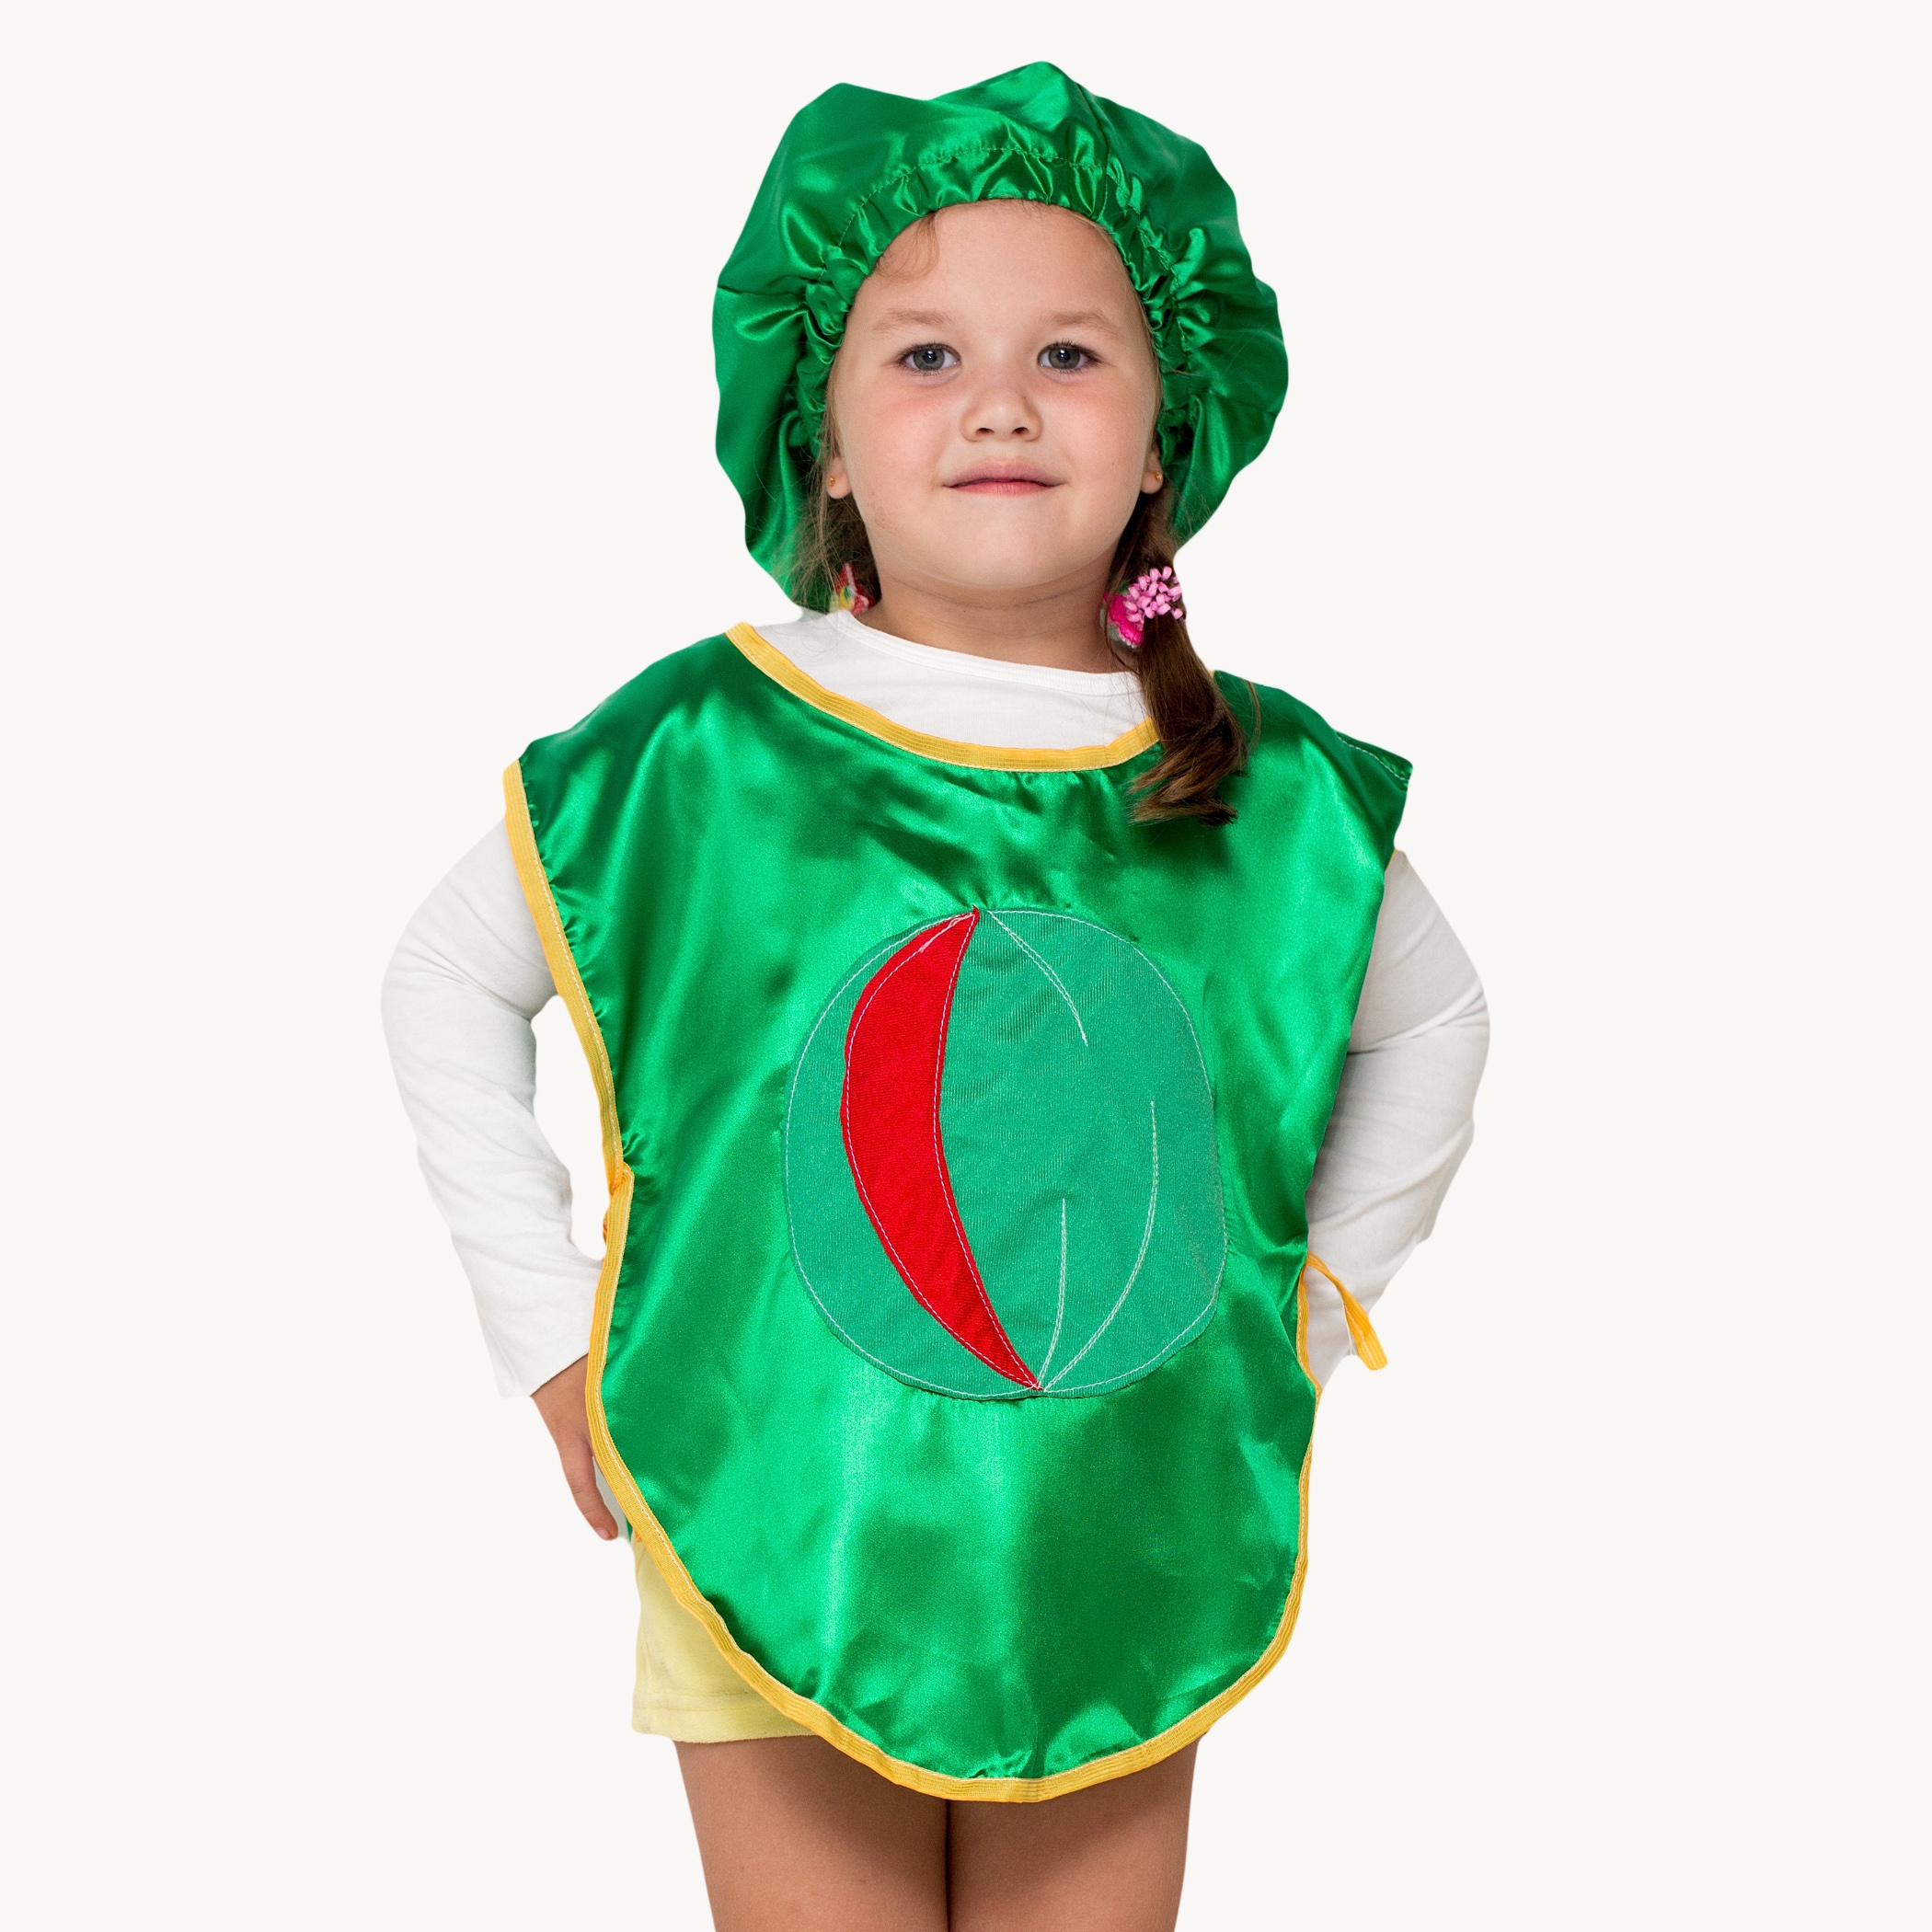 Костюм овоща. Костюм арбуза для мальчика. Карнавальный костюм Арбуз. Ребенок в костюме арбуза. Дети в костюмах.